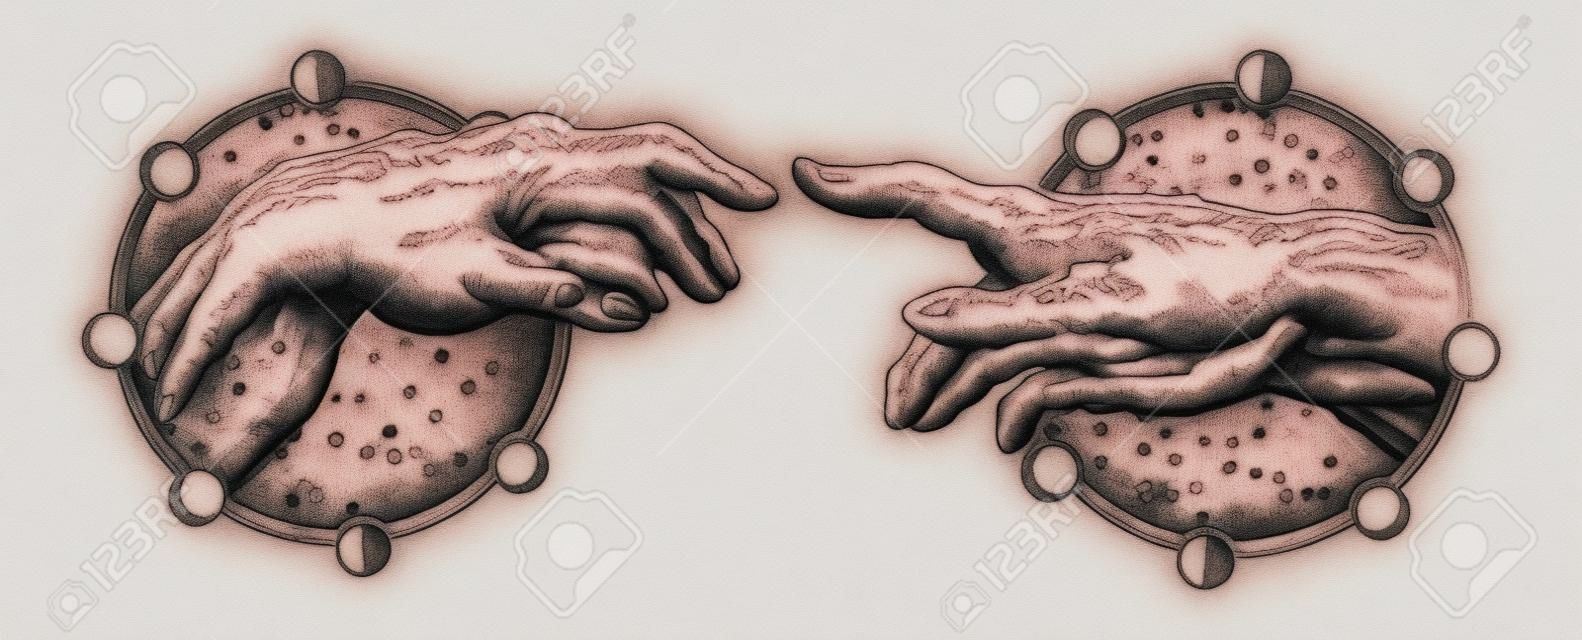 Michelangelo Gods aanraking. Menselijke handen raken met vingers tatoeage en t-shirt ontwerp. Handen tatoeage Renaissance. Goden en Adam, symbool van spiritualiteit, religie, verbinding en interactie